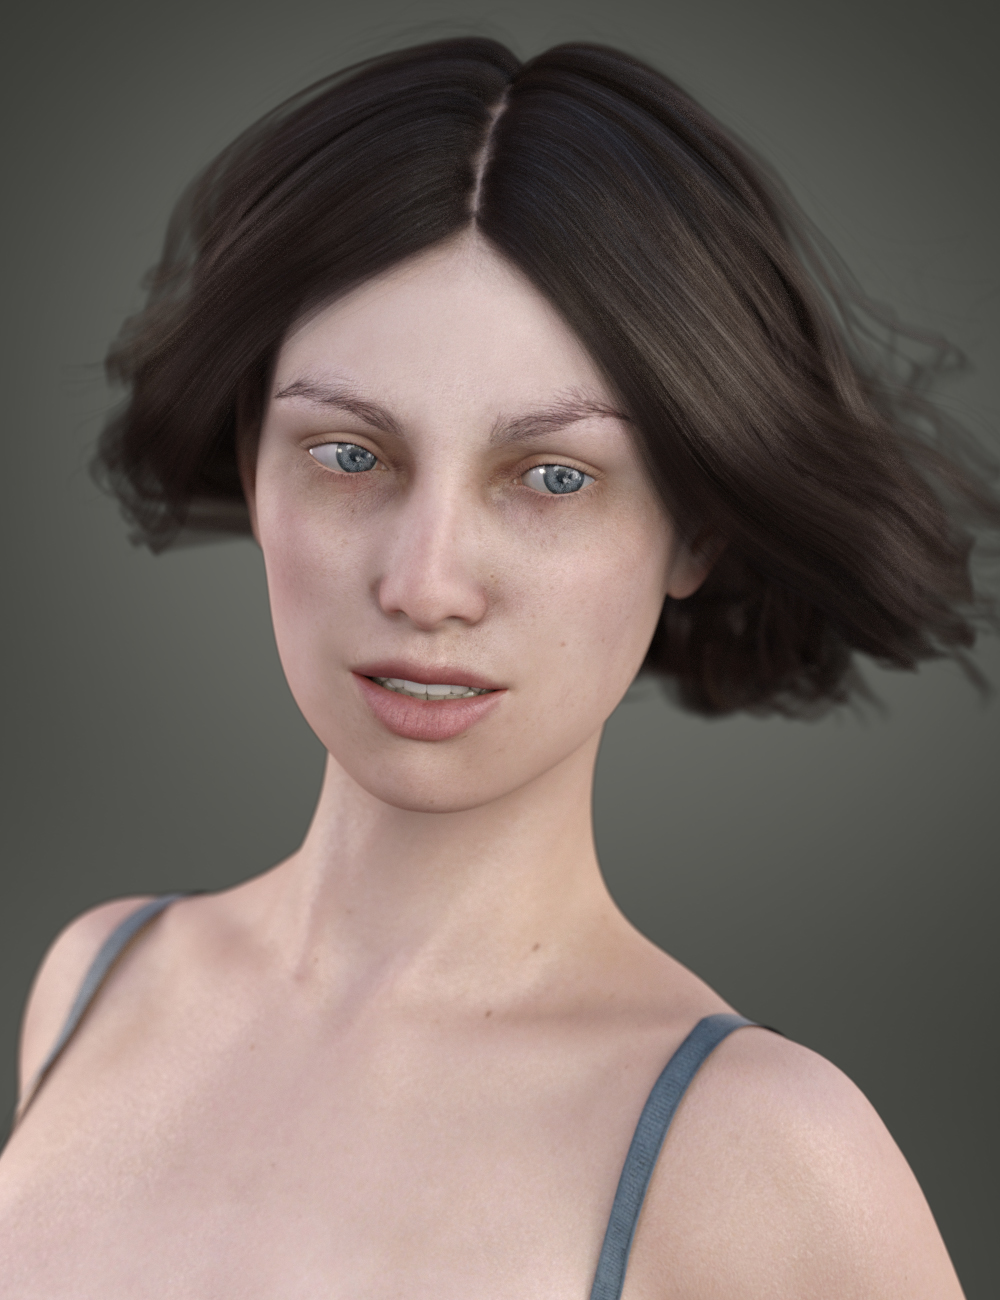 Lola for Genesis 3 Female by: Deepsea, 3D Models by Daz 3D